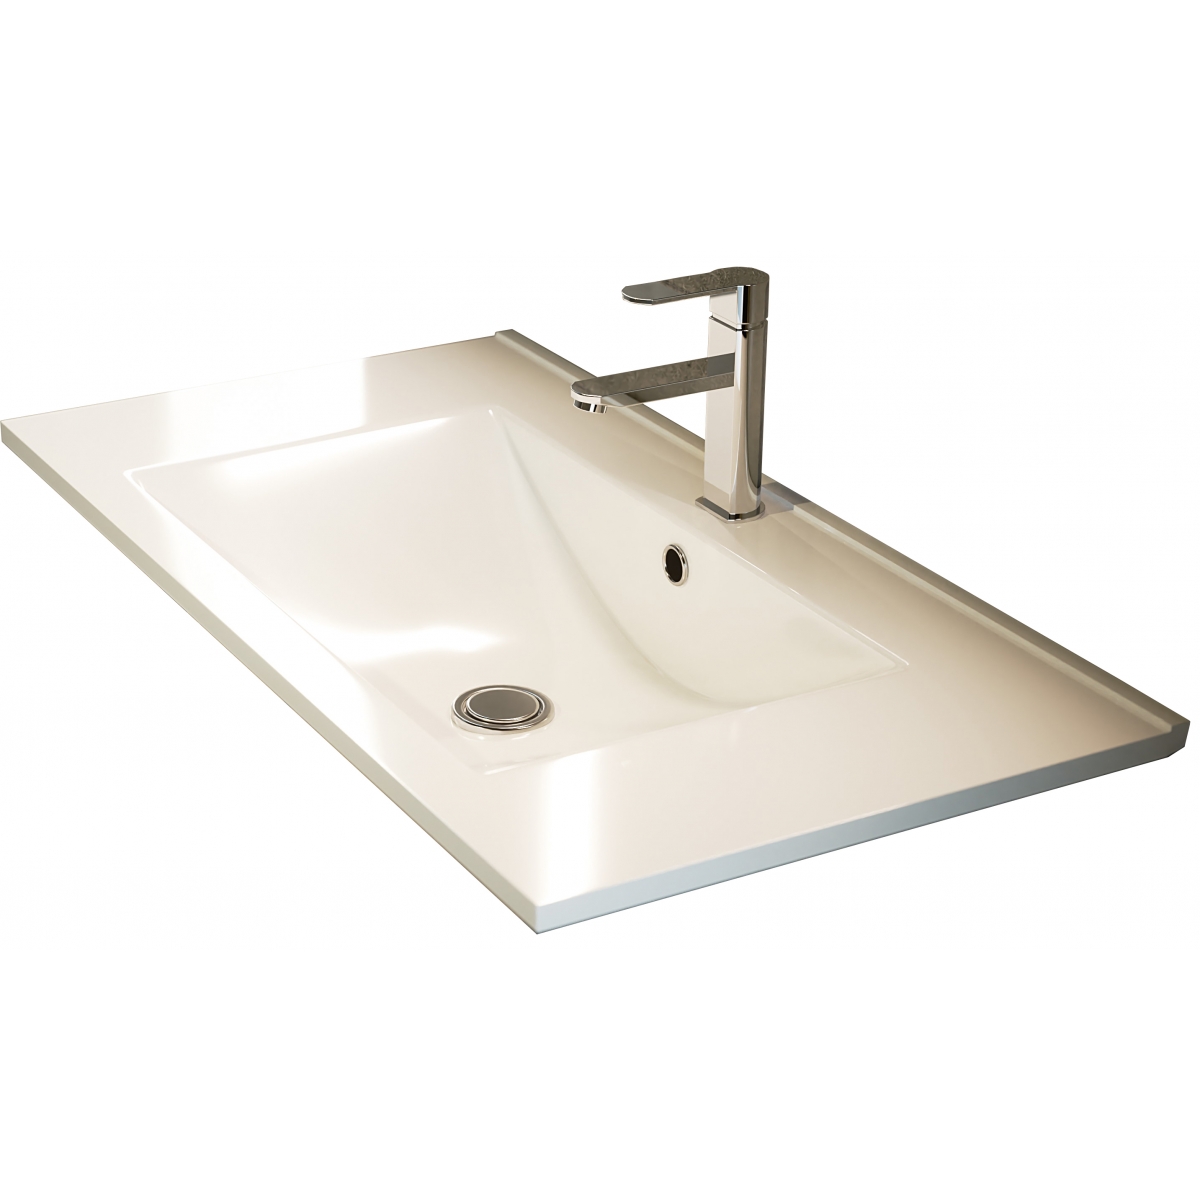 Detalle de Mueble de baño suspendido Derby de 80 cm de ancho color Hibernian con lavabo integrado